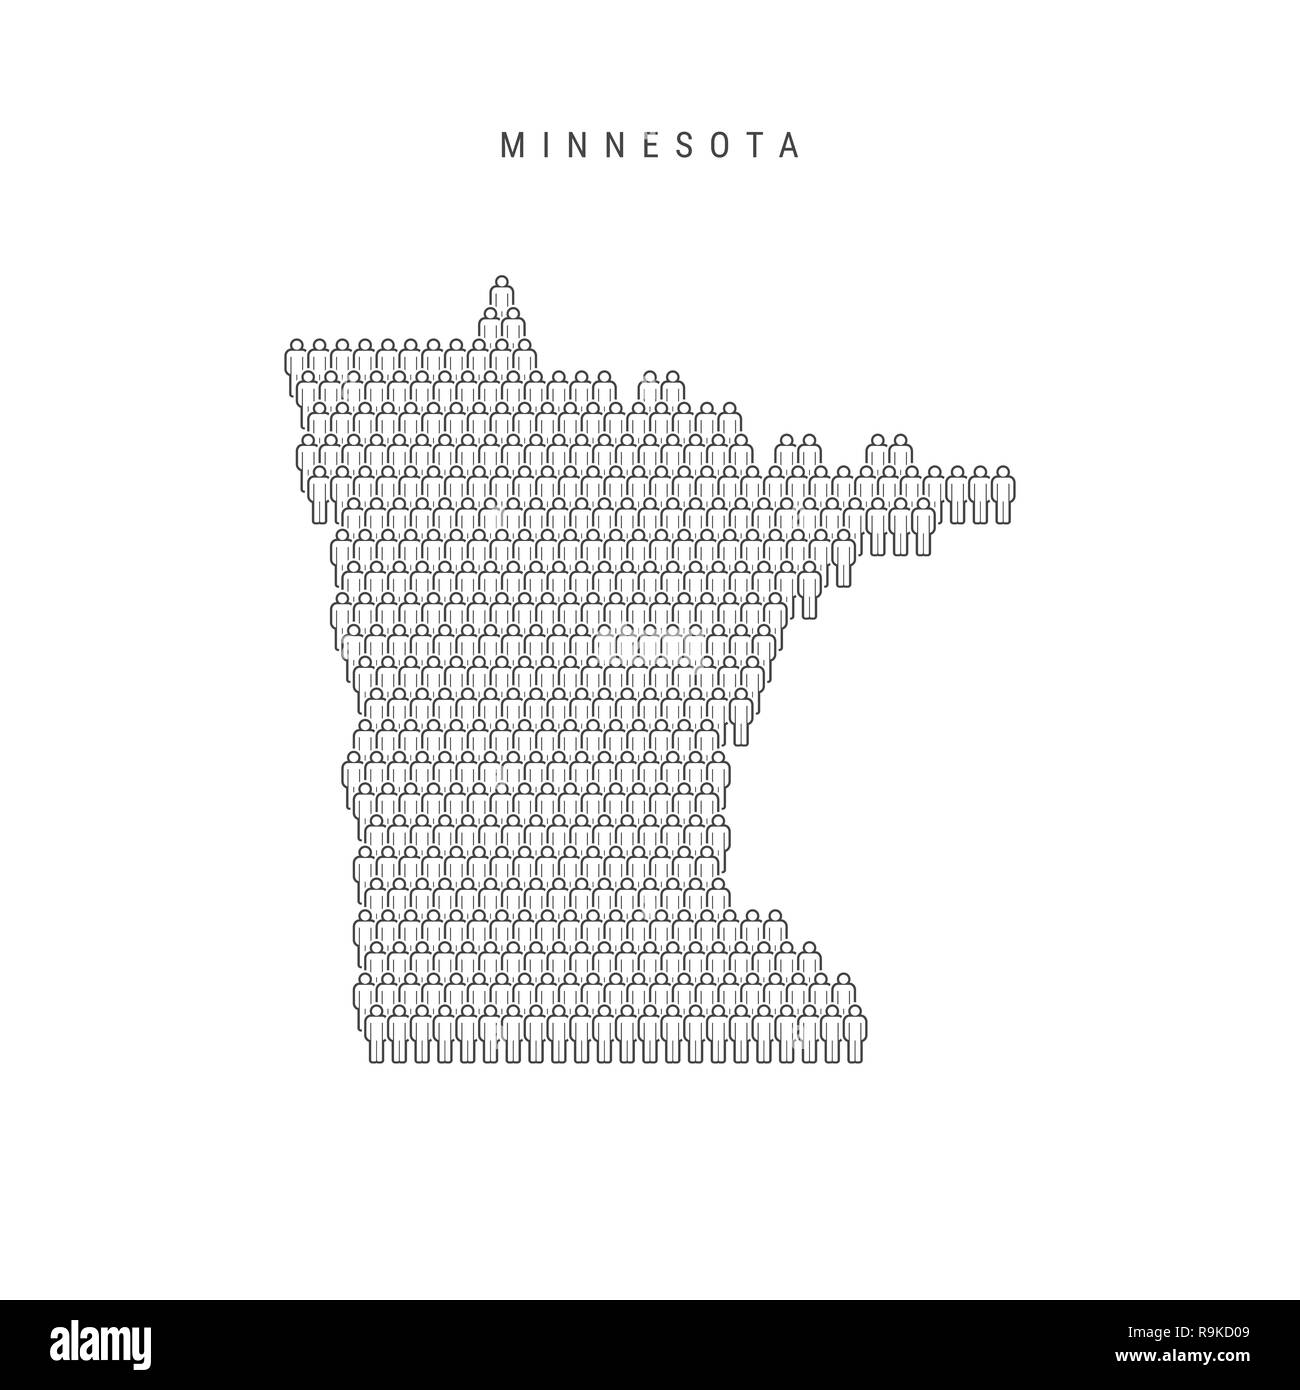 Leute Karte von Minnesota, US-Staat. Stilisierte Silhouette, Leute in der Form einer Karte von Minnesota. Minnesota Bevölkerung. Abbildung: Isolierte o Stockfoto